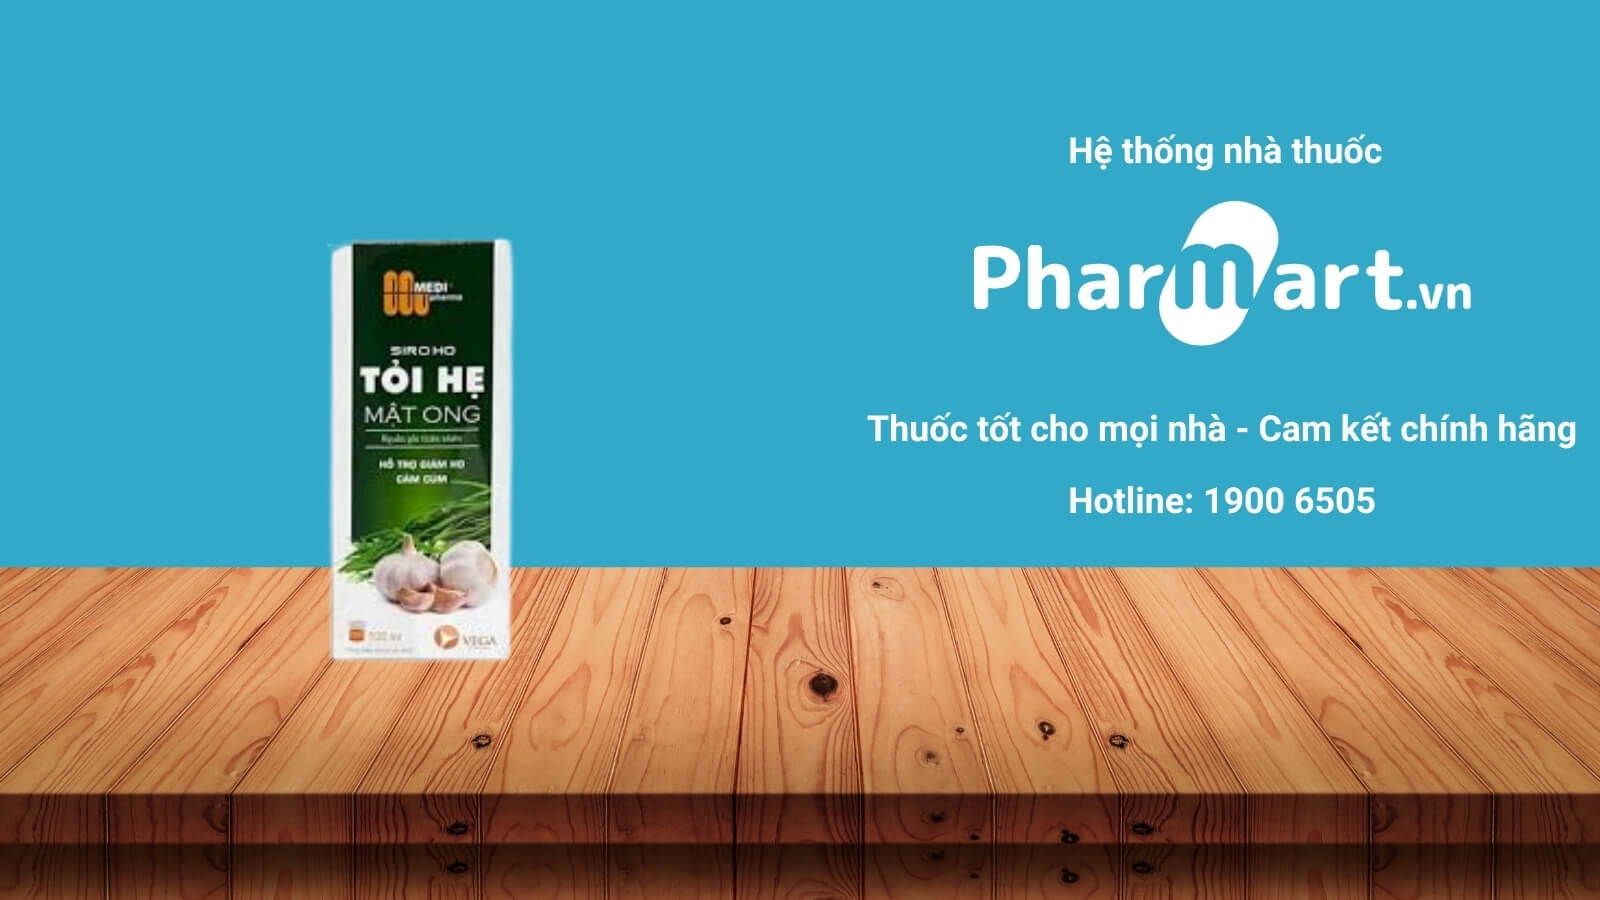 Mua Siro tỏi hẹ mật ong Medipharma chính hãng tại Pharmart.vn 